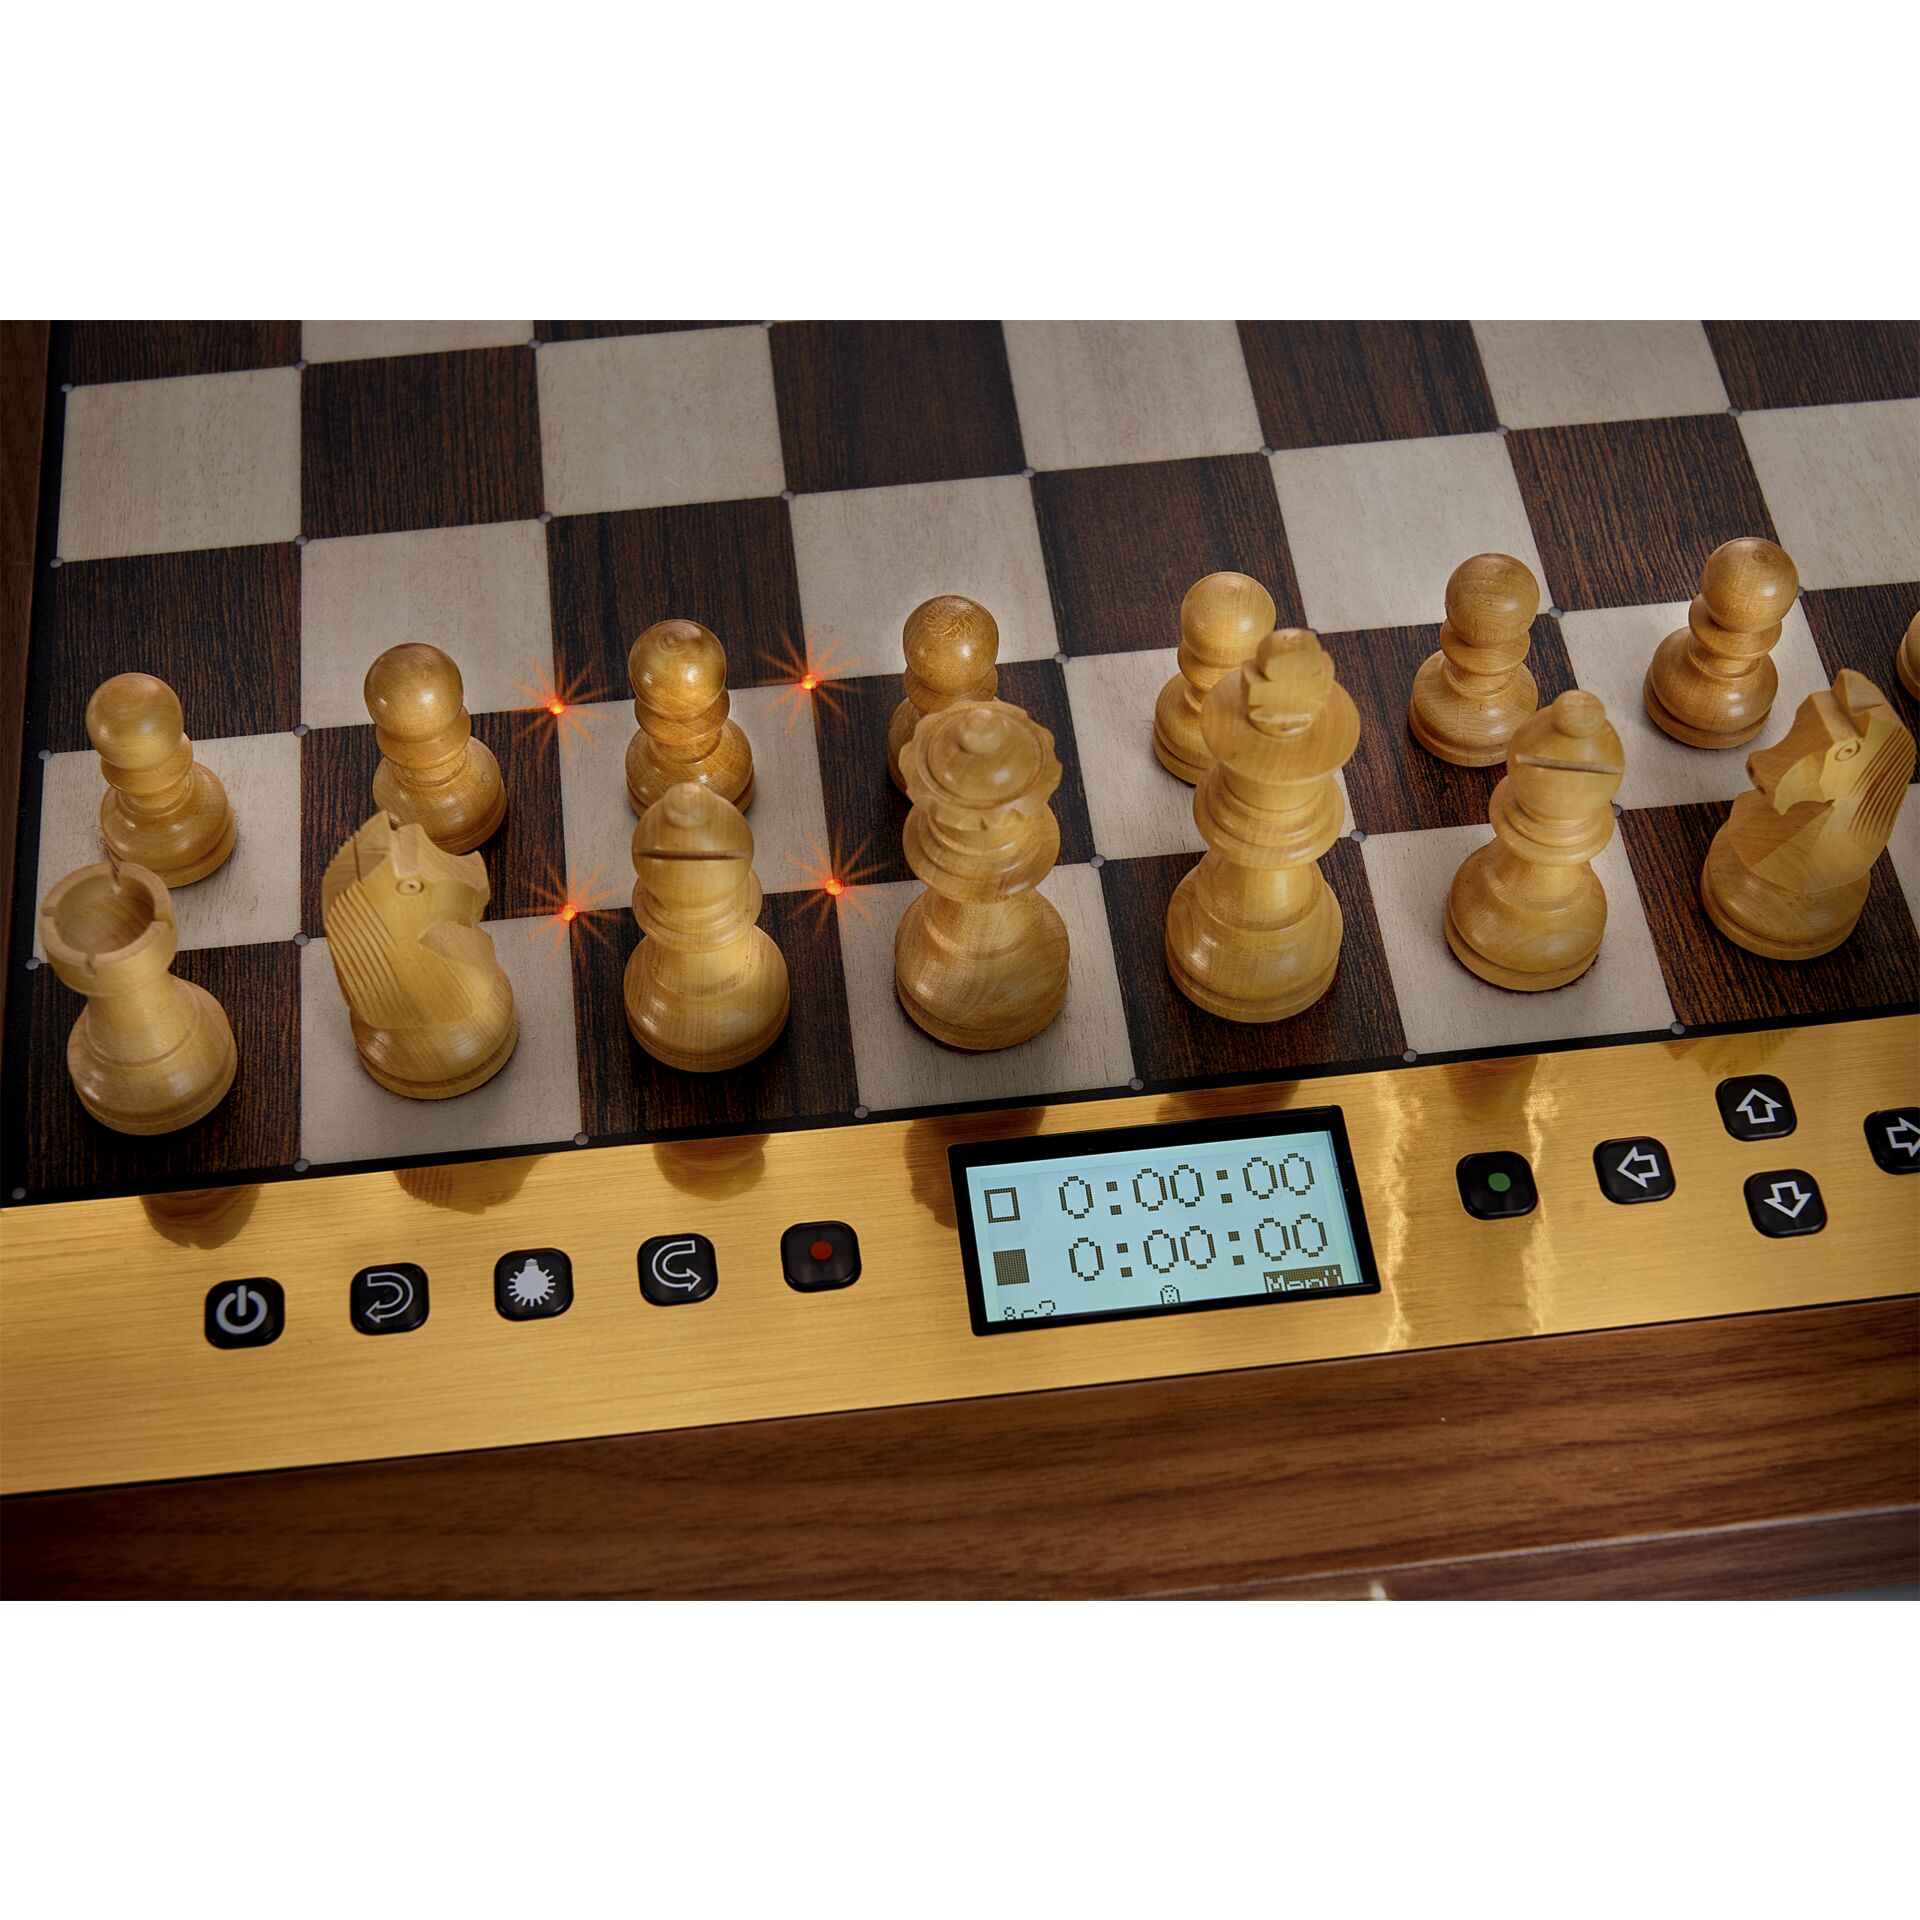 Millennium Karpov Chess School Chess Computer